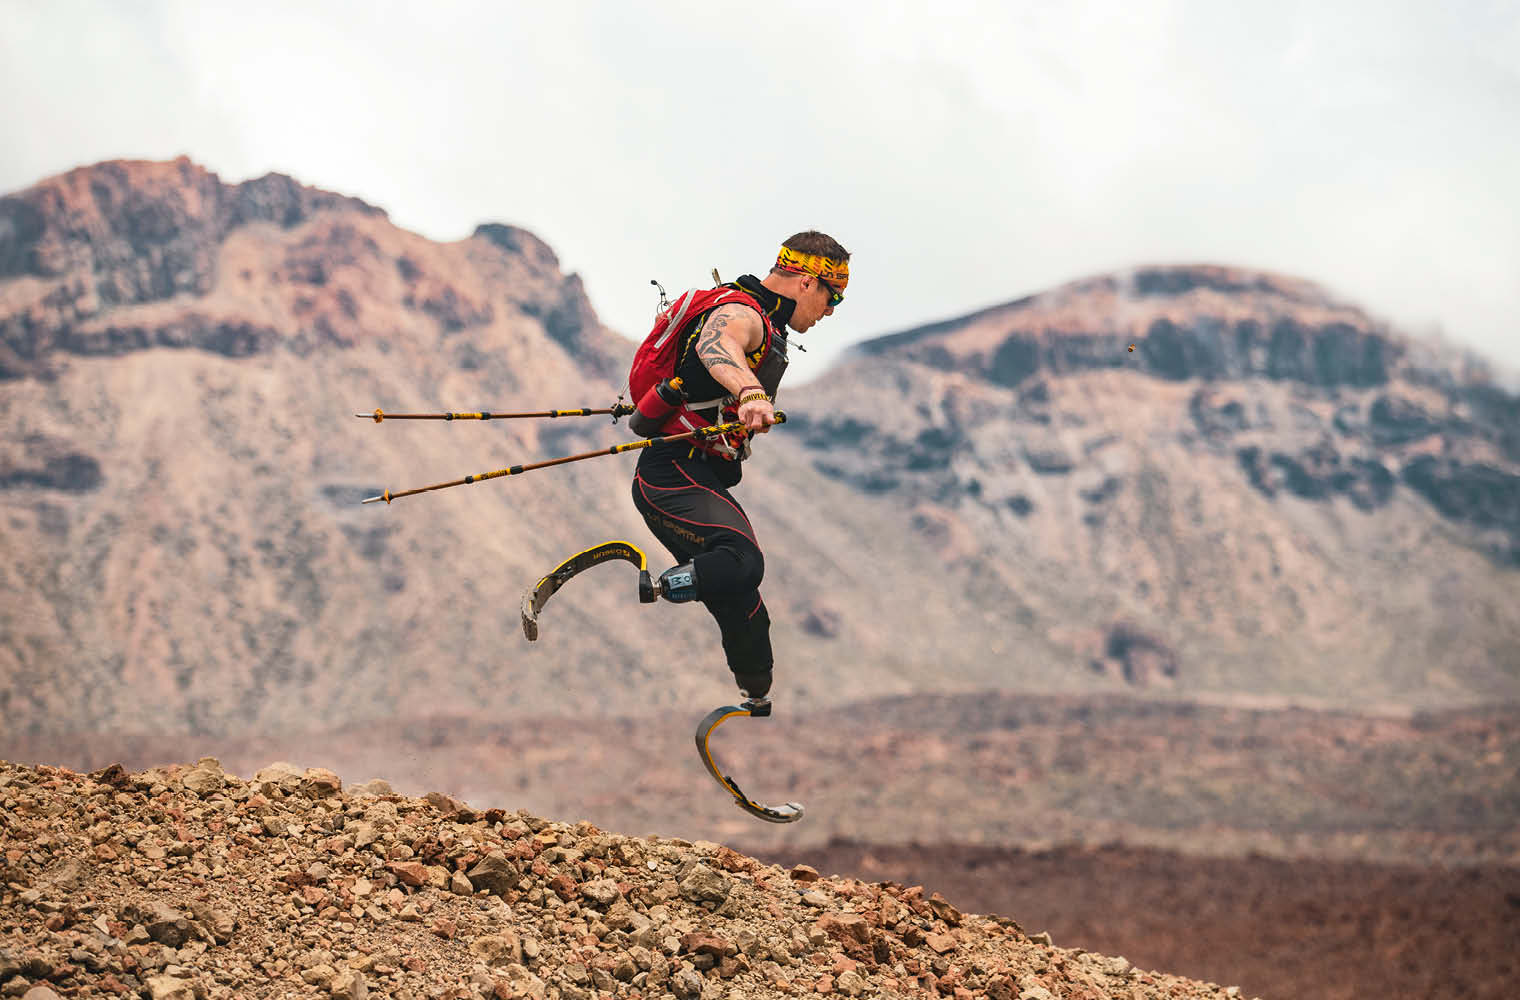 Ein Sportler mit Prothesen an beiden Beinen springt mit Wanderstöcken über steiniges Gelände. Er trägt eine rote Sportweste und eine Sonnenbrille. Im Hintergrund sind unscharfe Bergkonturen sichtbar.